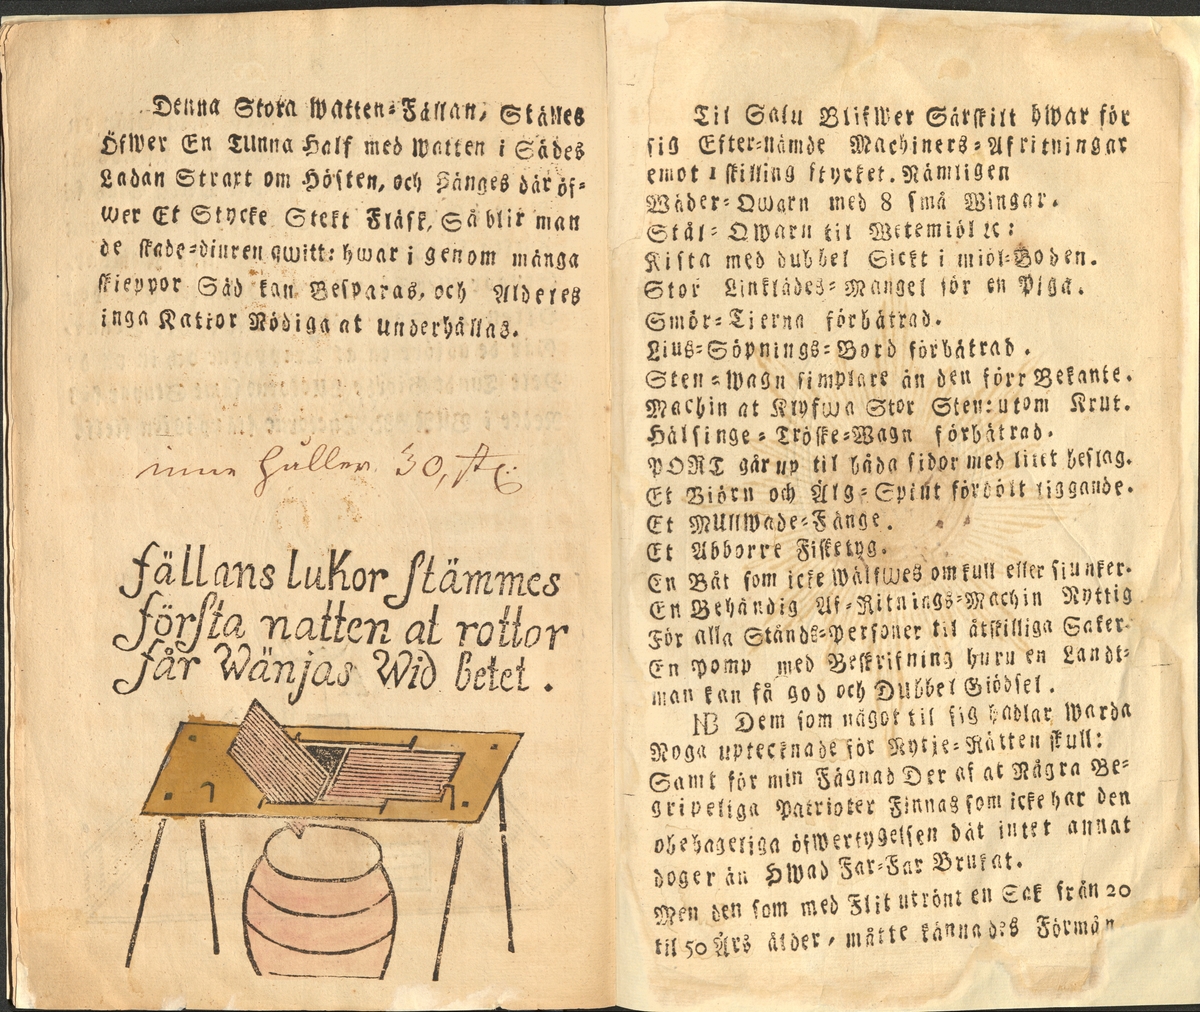 Bondestolpe. Beskrivningar rörande fångst- och jordbruksredskap. Utgiven av Pontus von Wulfschmidt mellan 1771-1783. Han kunde sedan mot betalning tillverka små trämodeller av föremålen.